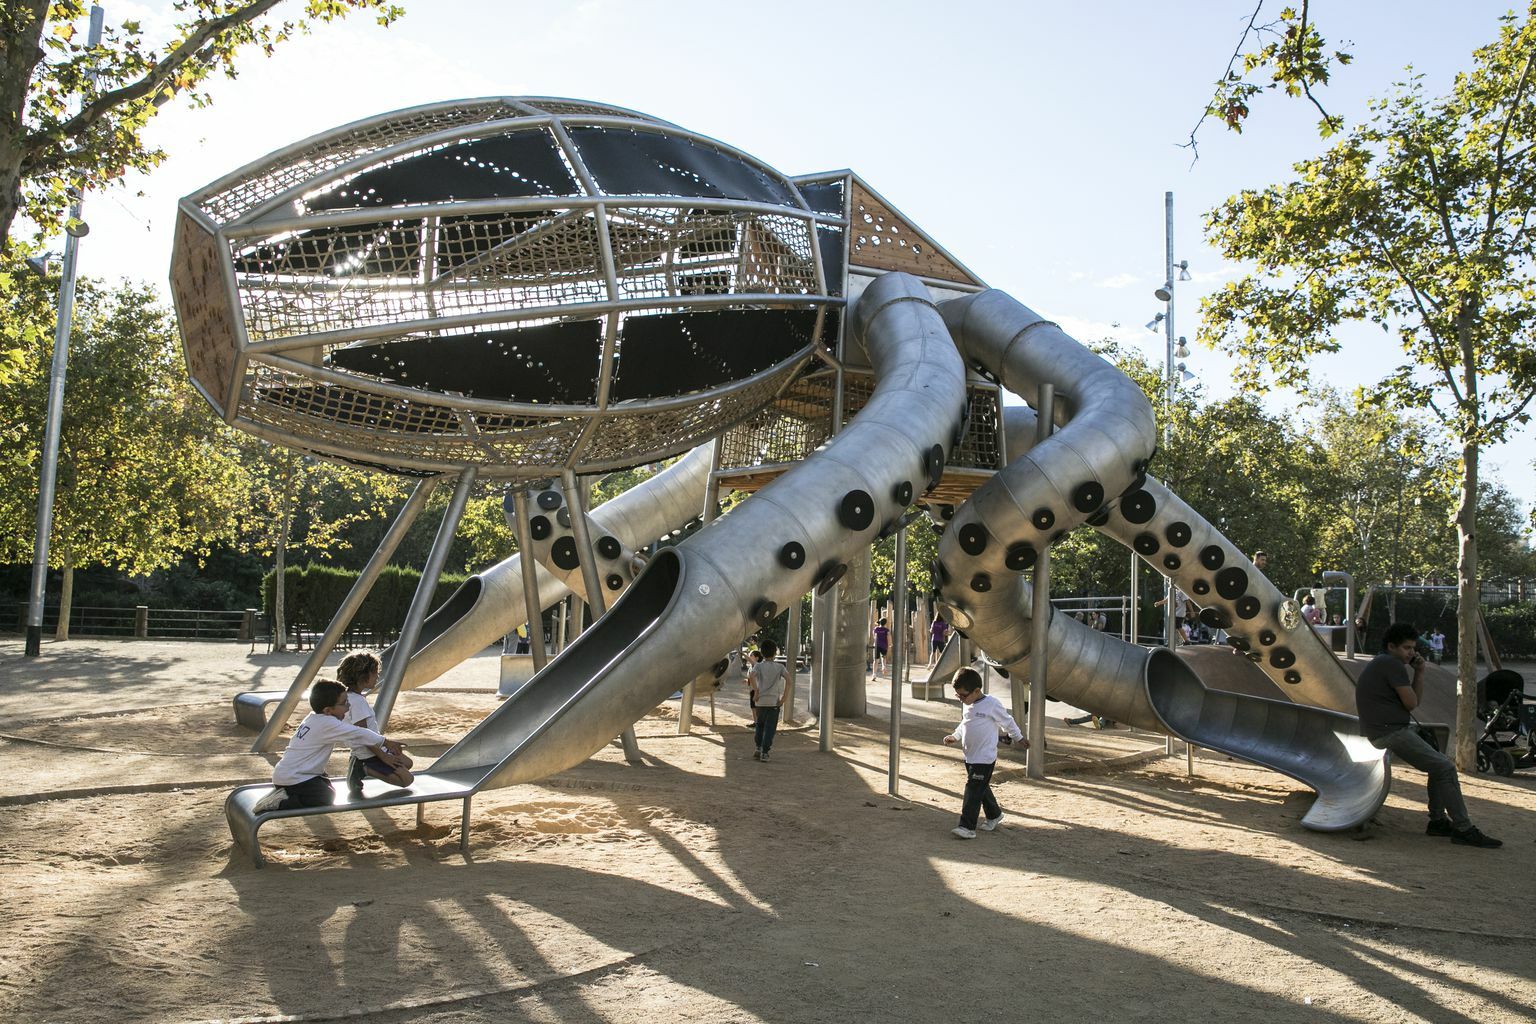 Así será el parque infantil más grande de Barcelona